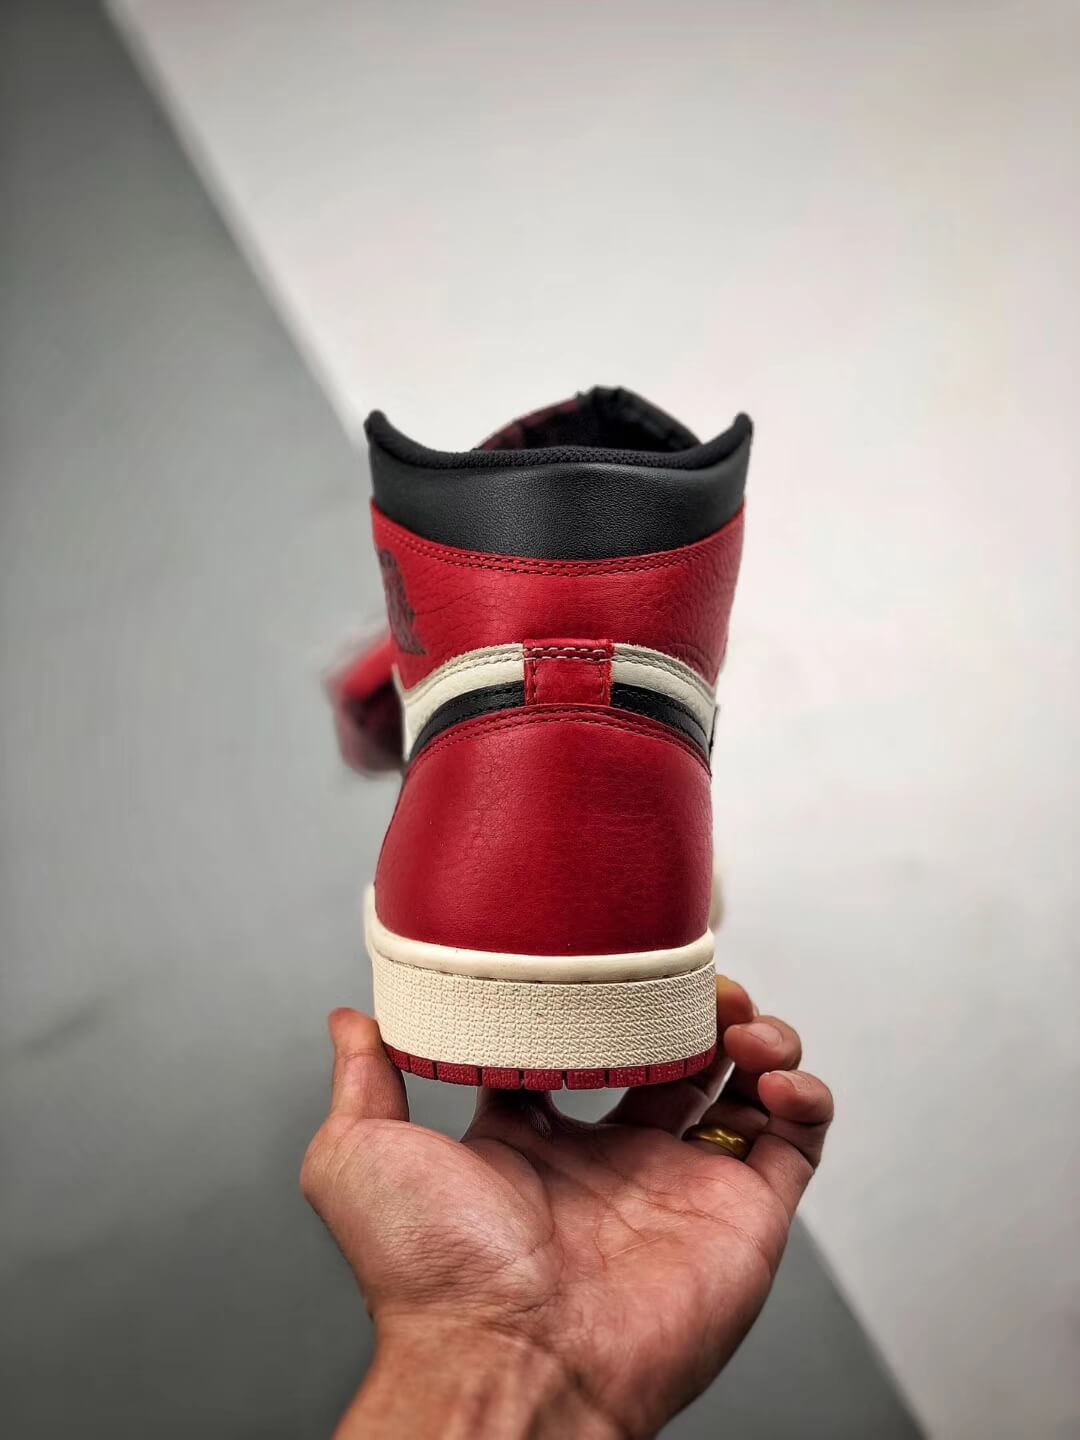 The Air Jordan 1 Retro High OG Bred Toe Best Quality RepSneaker 09